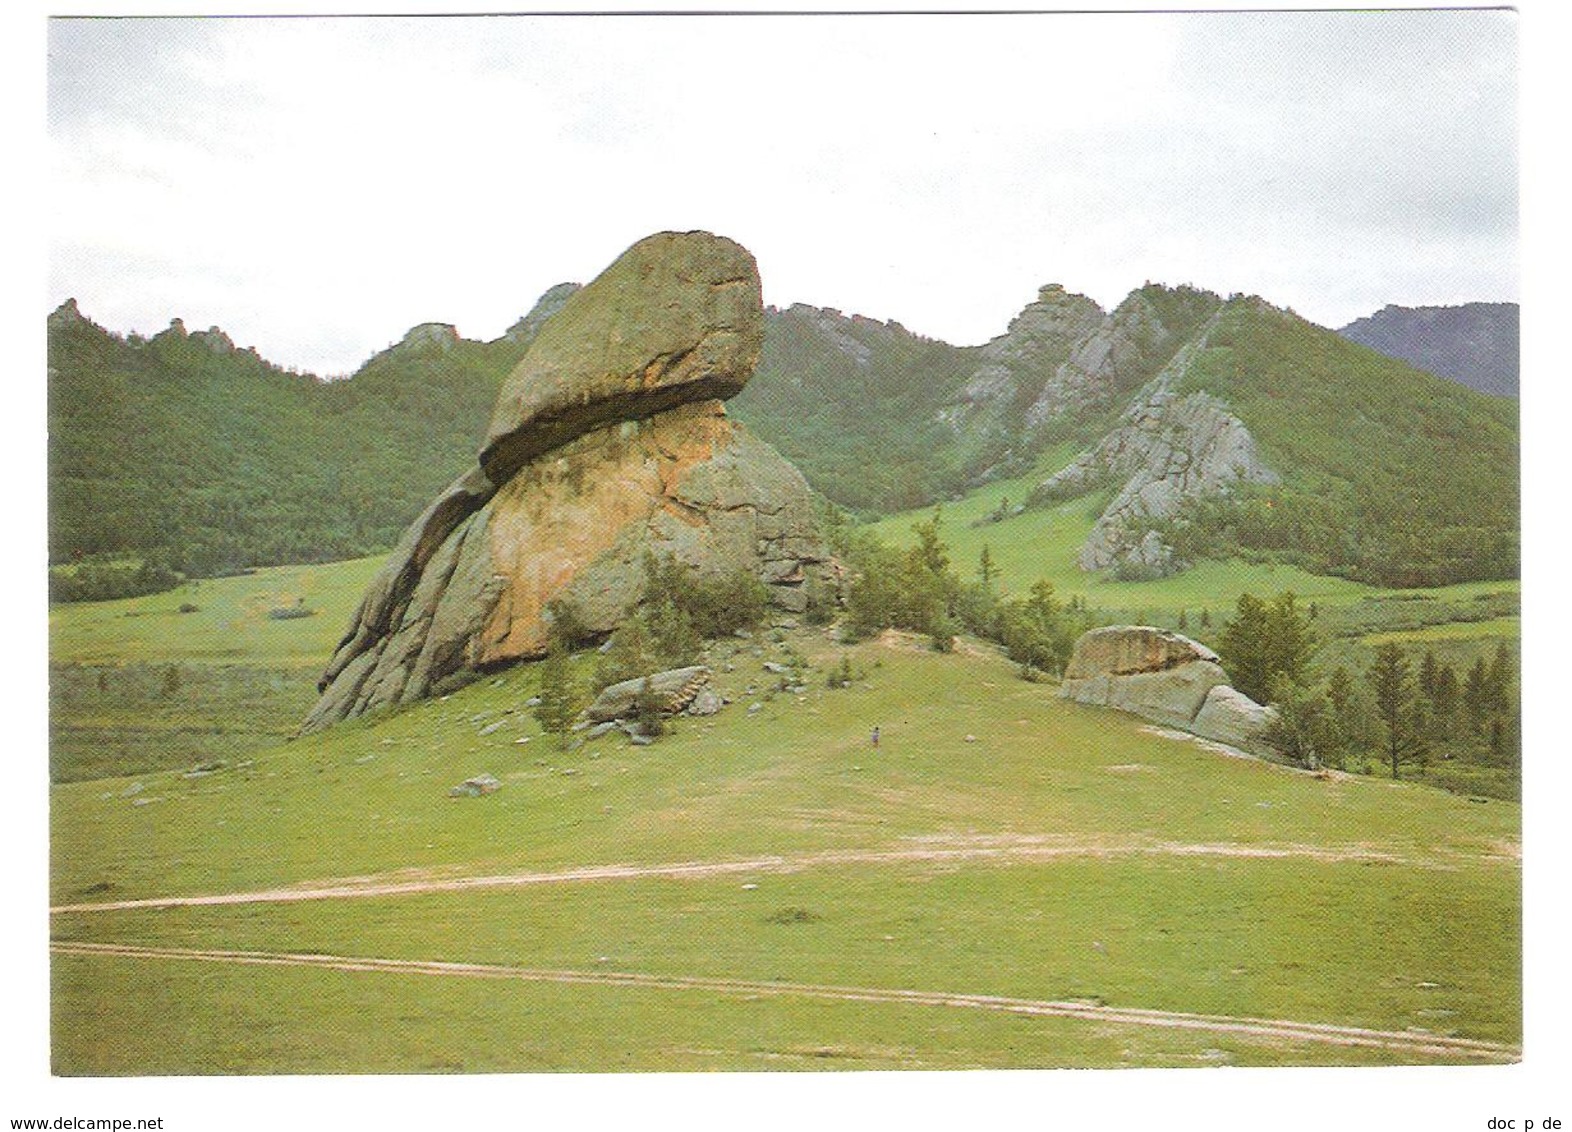 Mongolia - Melkhii Khad - Turtle Rock - Mongolia